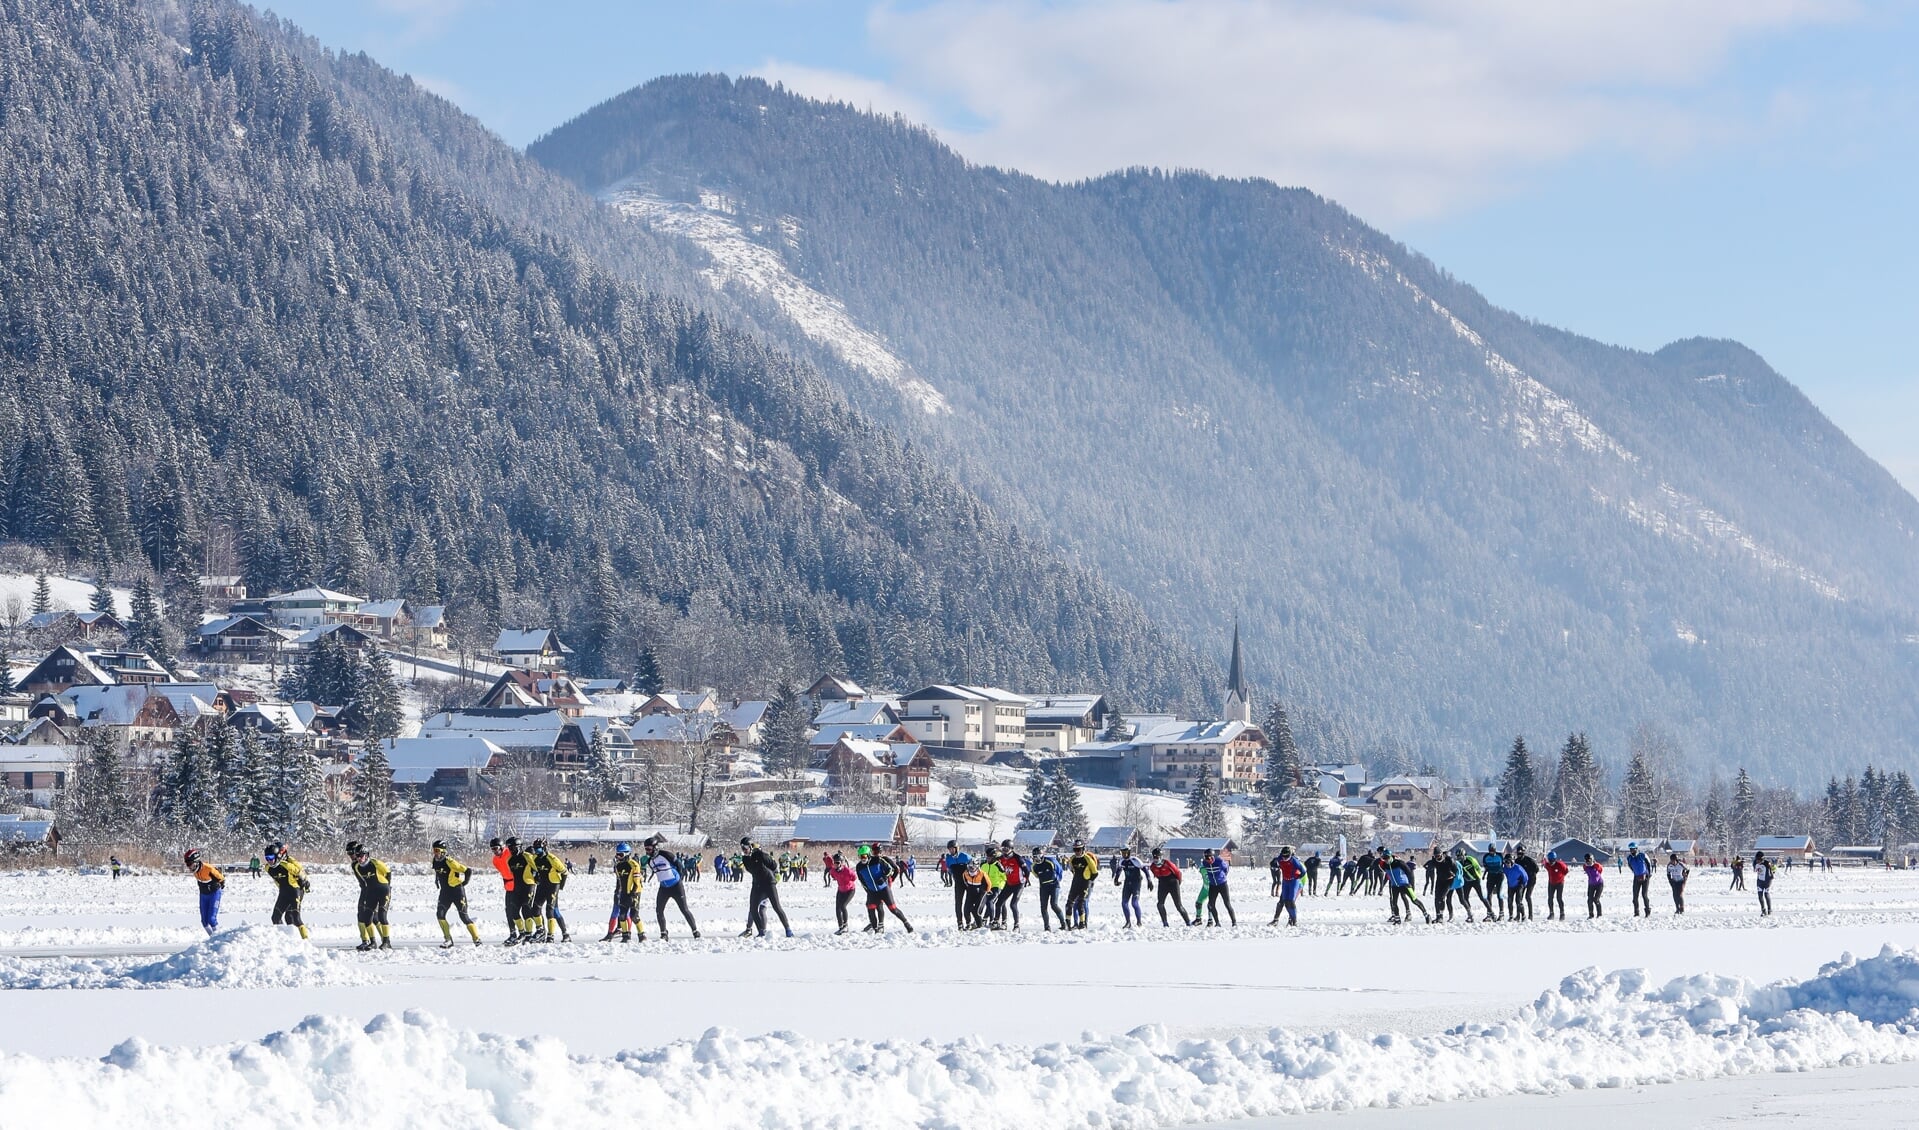 De Weissensee als prachtig decor voor heerlijke schaatstochten. Nederlanders krijgen er geen genoeg van. (Foto TimsImaging)